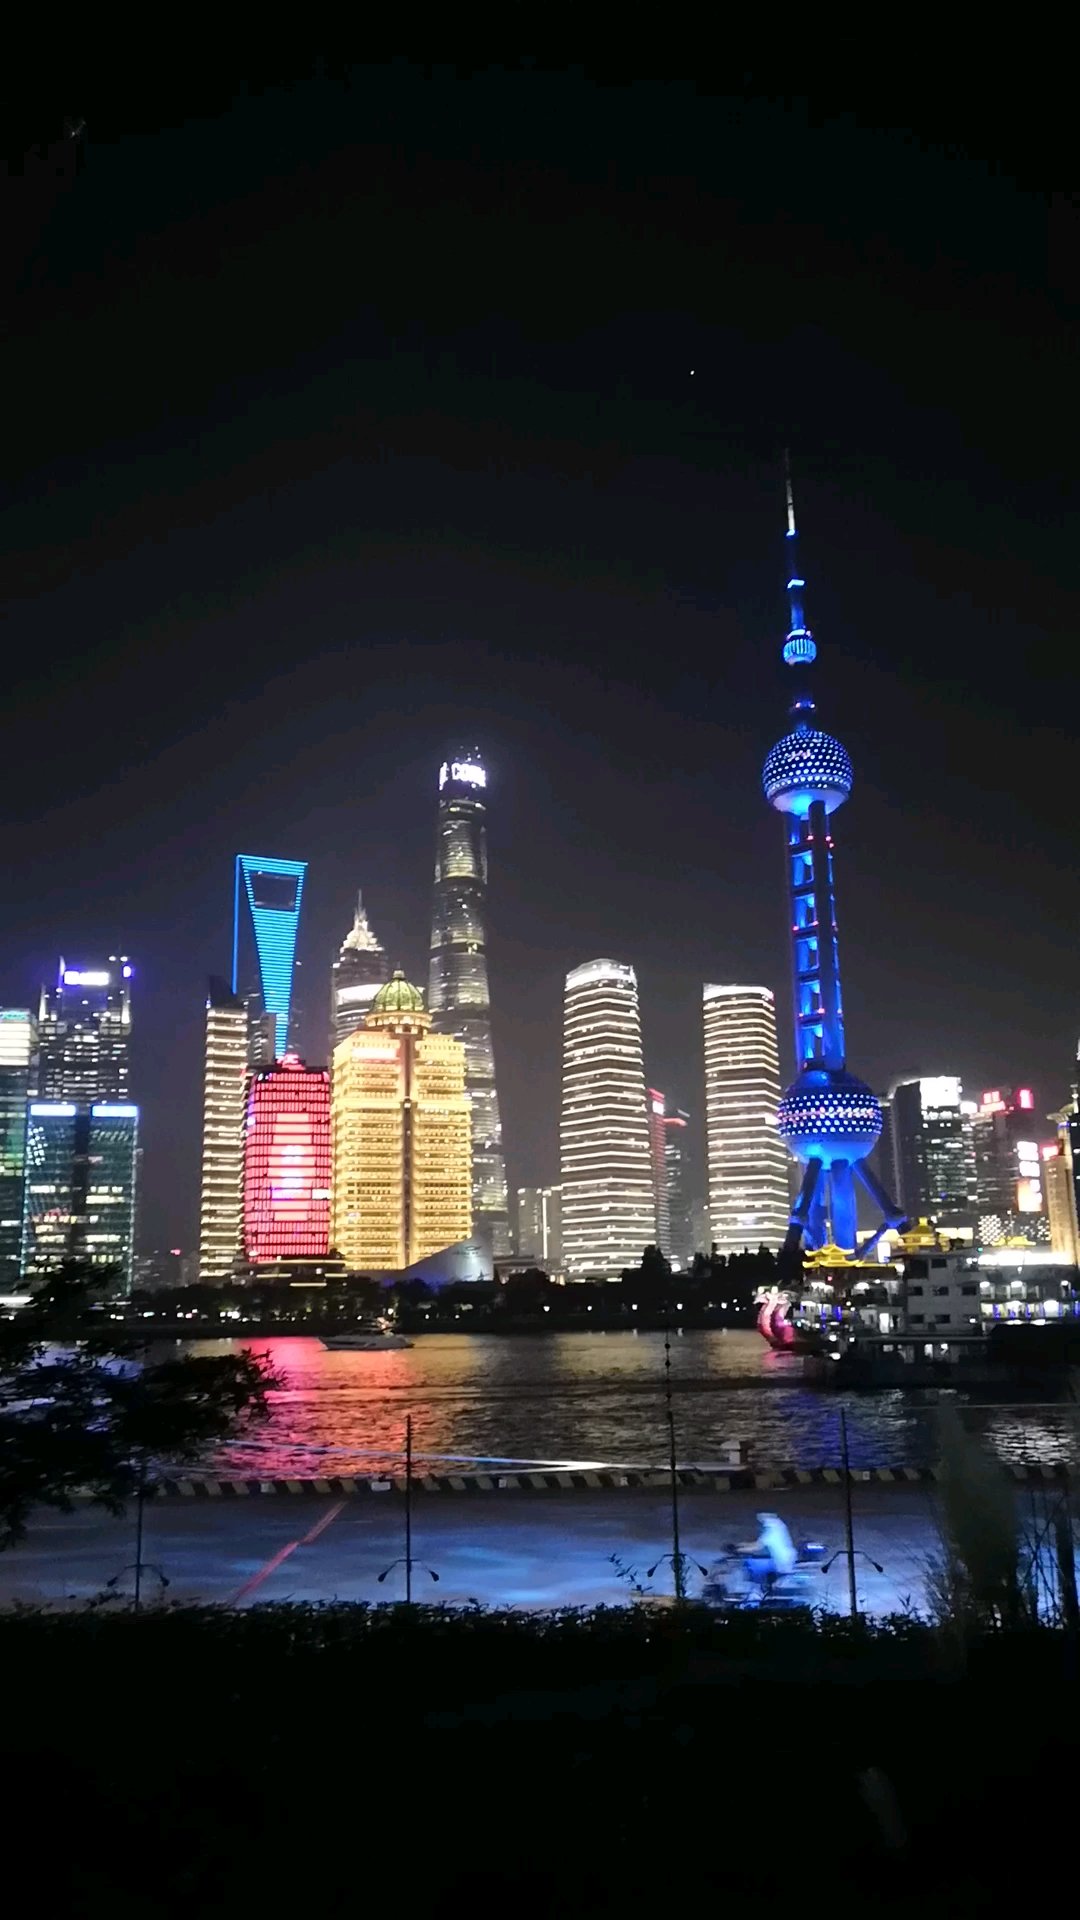 遇见好风景#上海外滩夜景,体会上海之大之瑰丽多姿